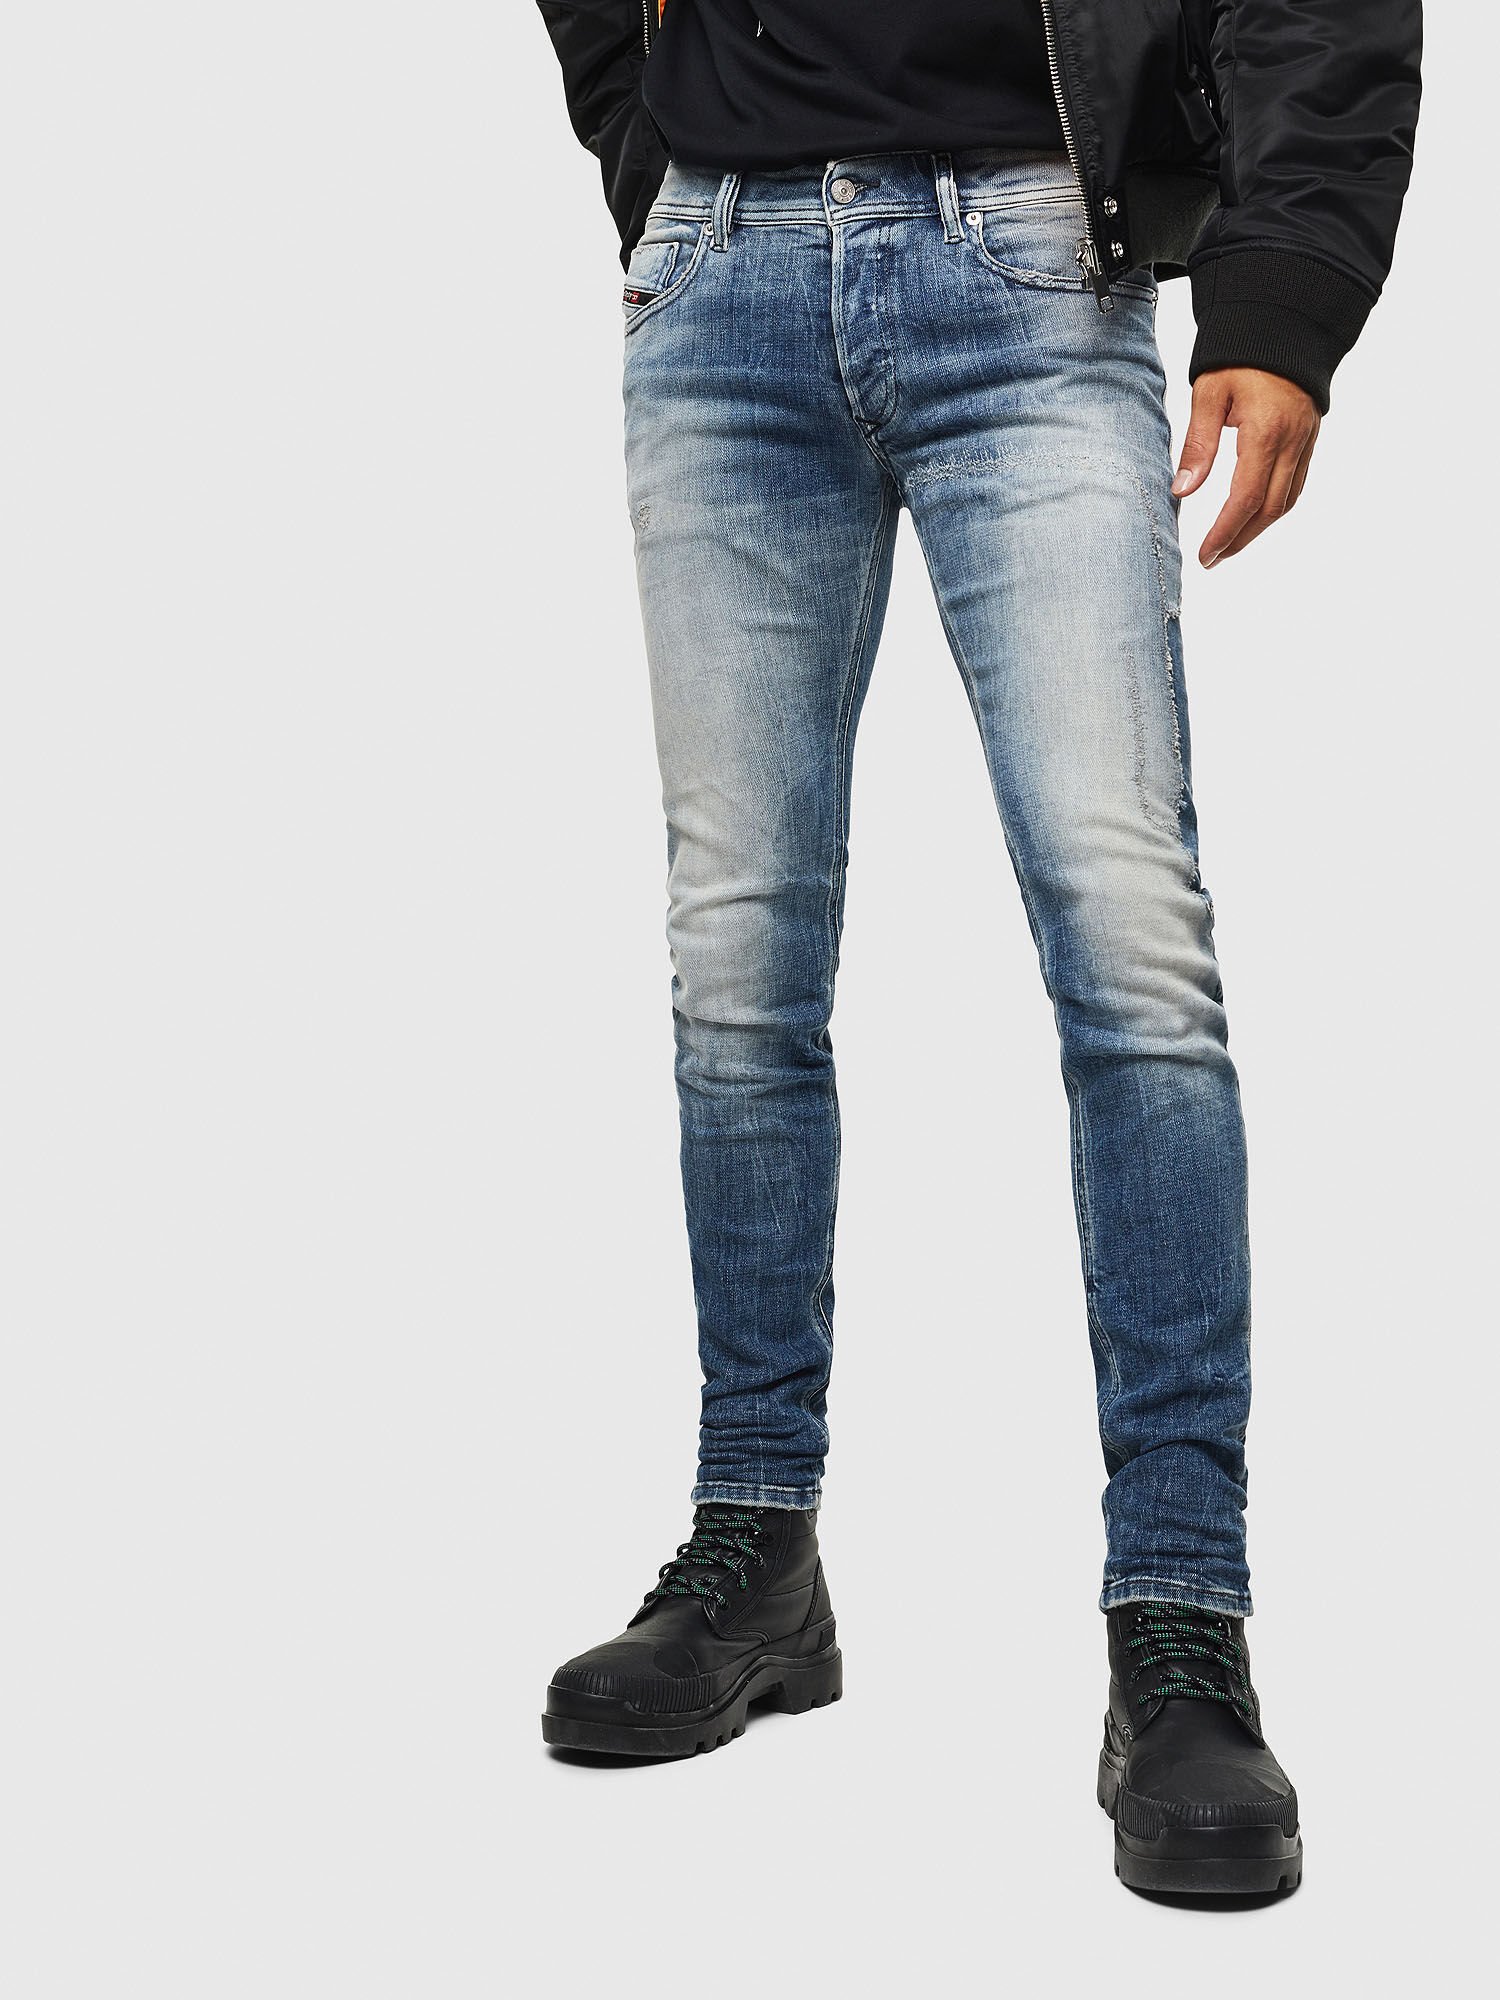 h&m jeans super stretch